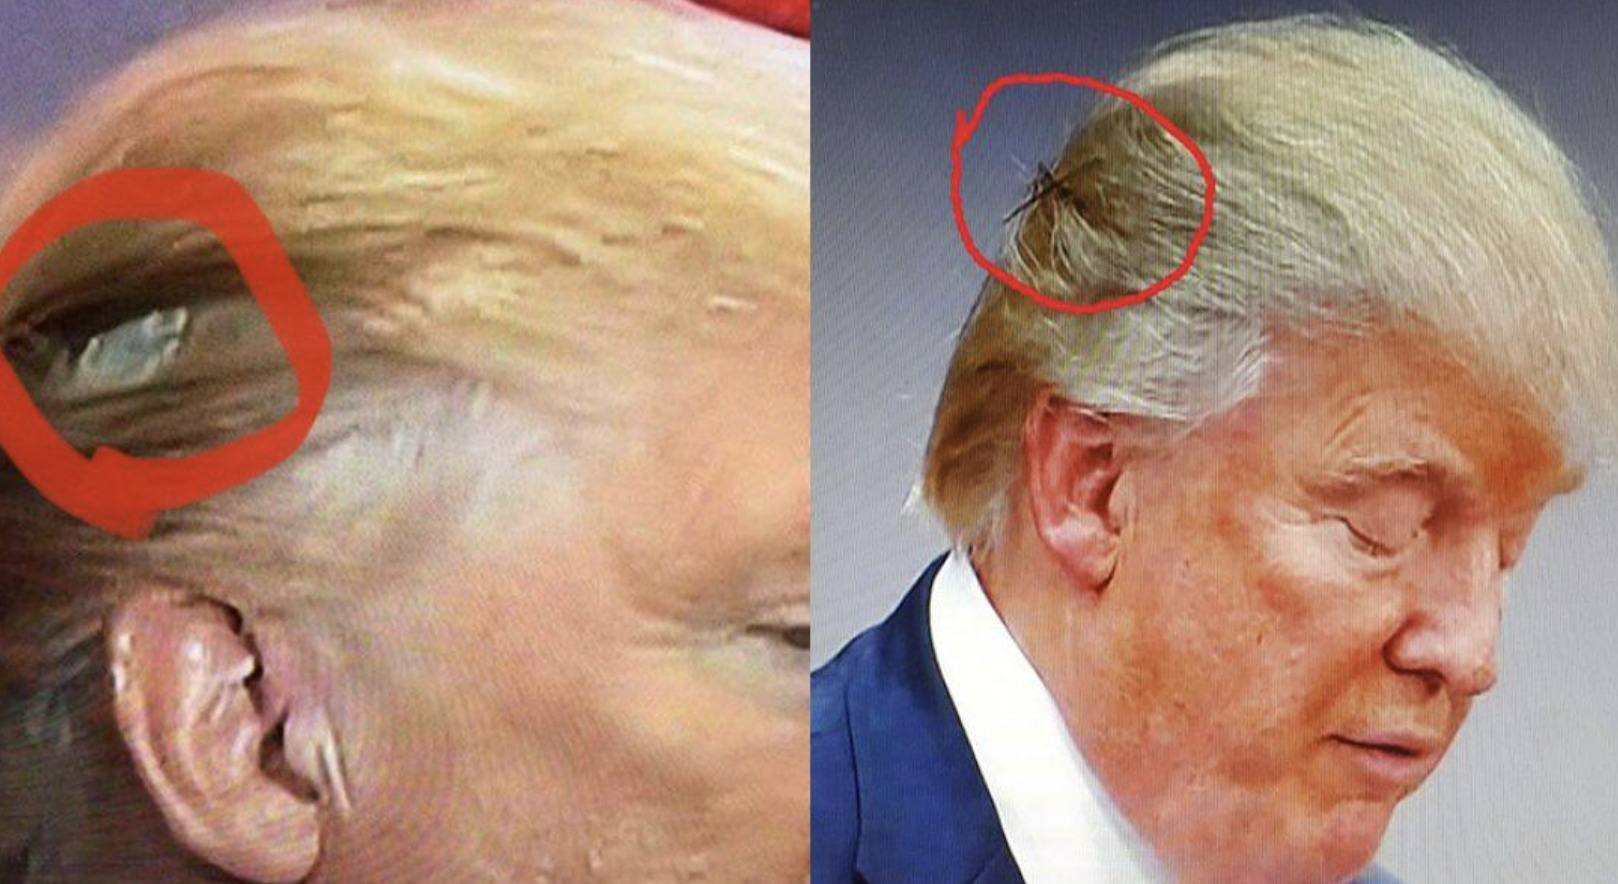 6. "Trump Girl" Blonde Hair Makeup - wide 2